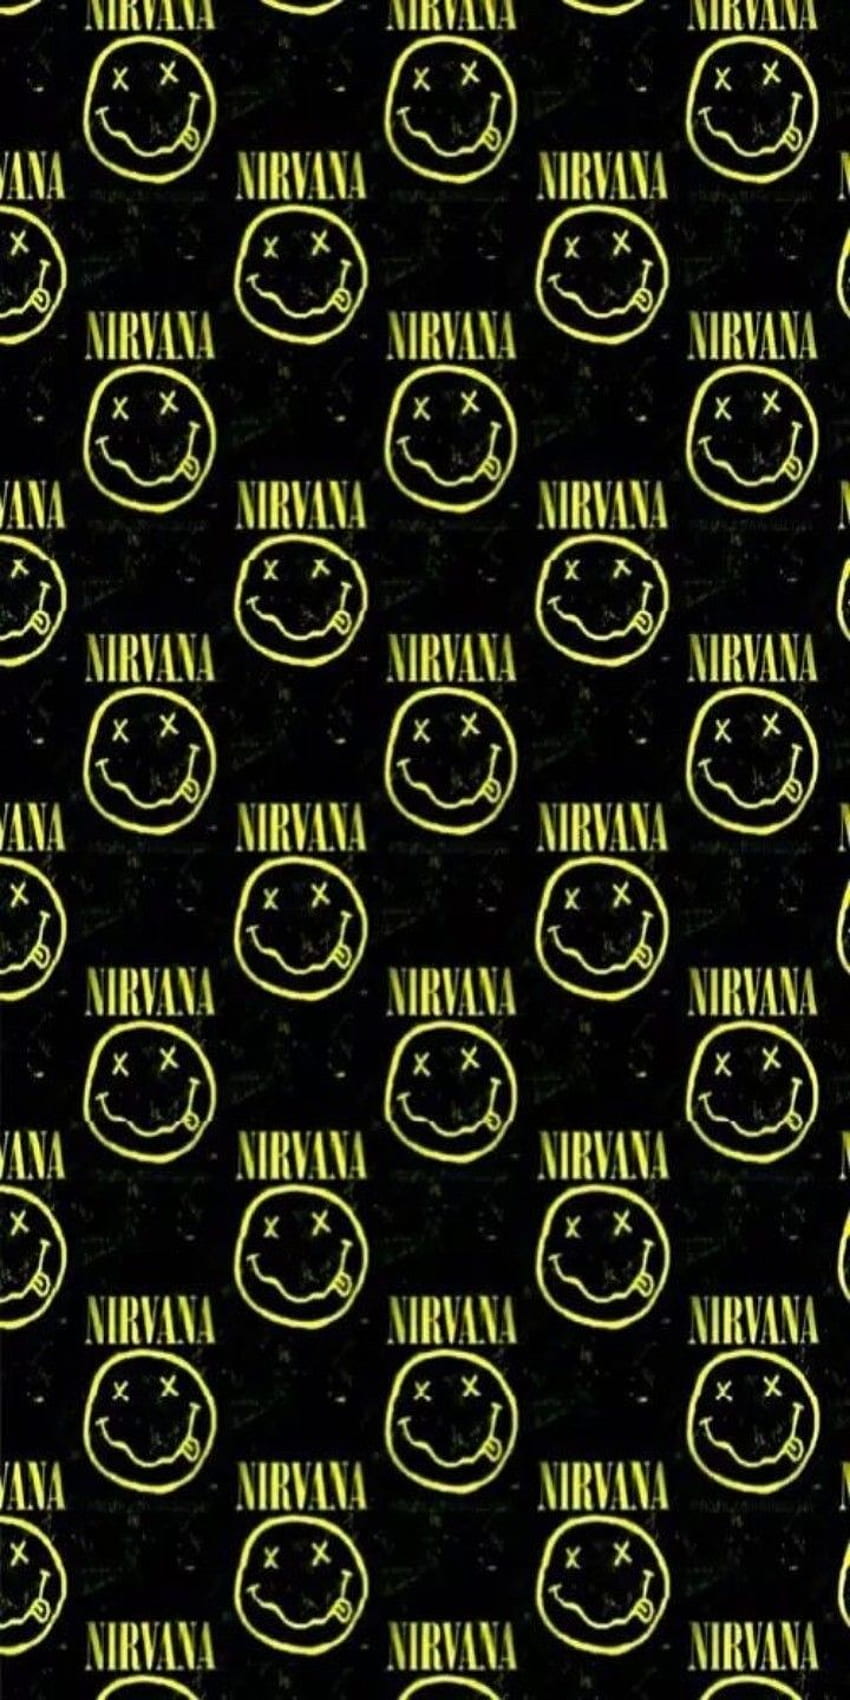 nirvana smiley face wallpaper